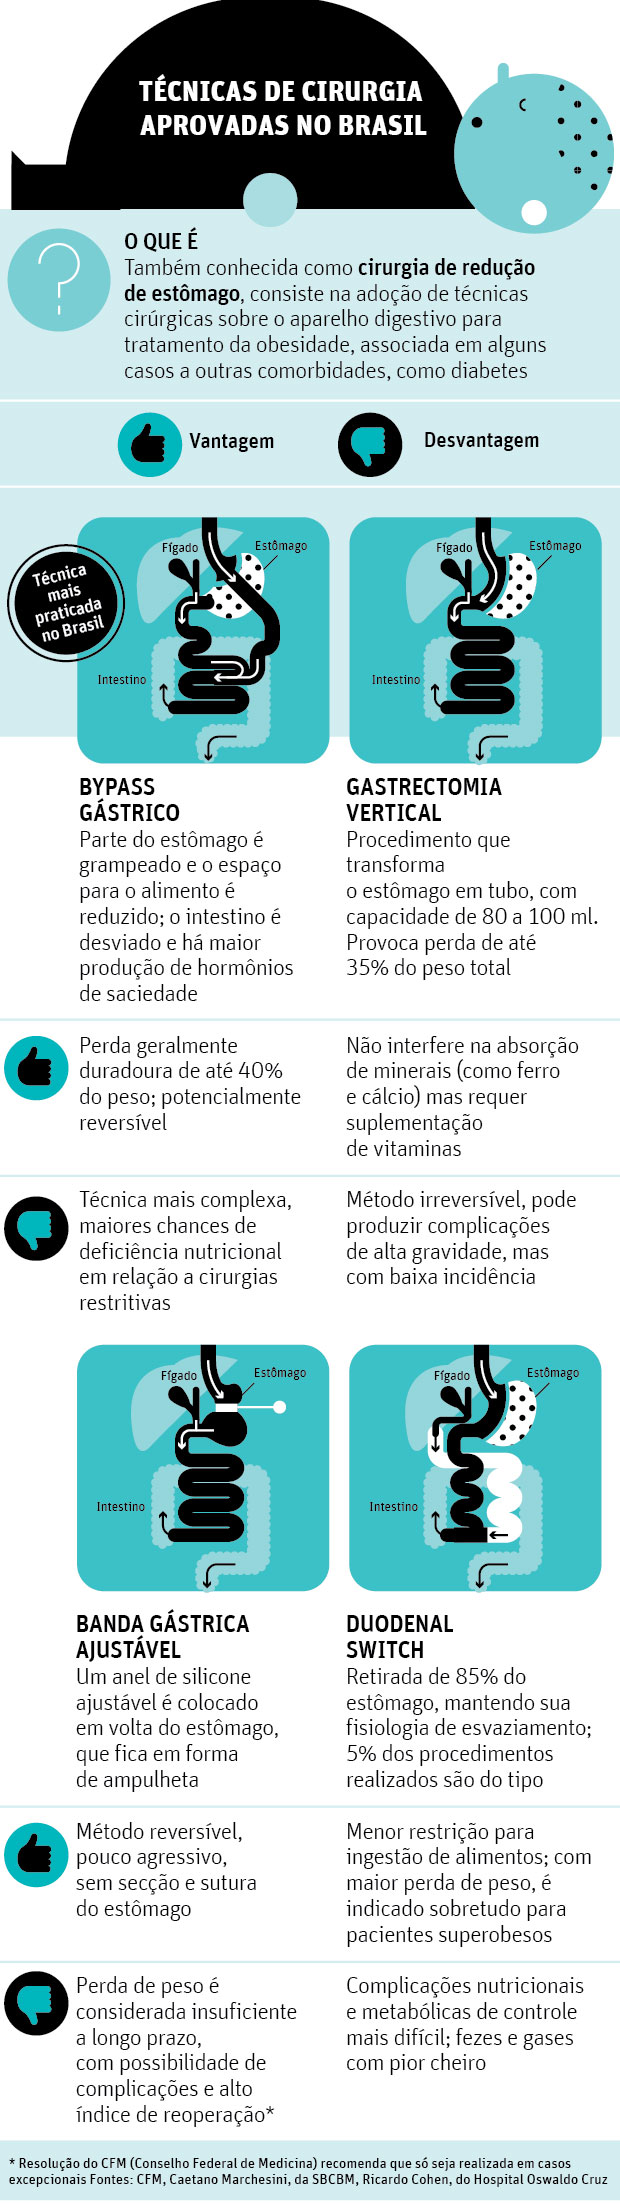 CIRURGIA NO BRASIL Tcnicas de cirurgia aprovadas no Brasil